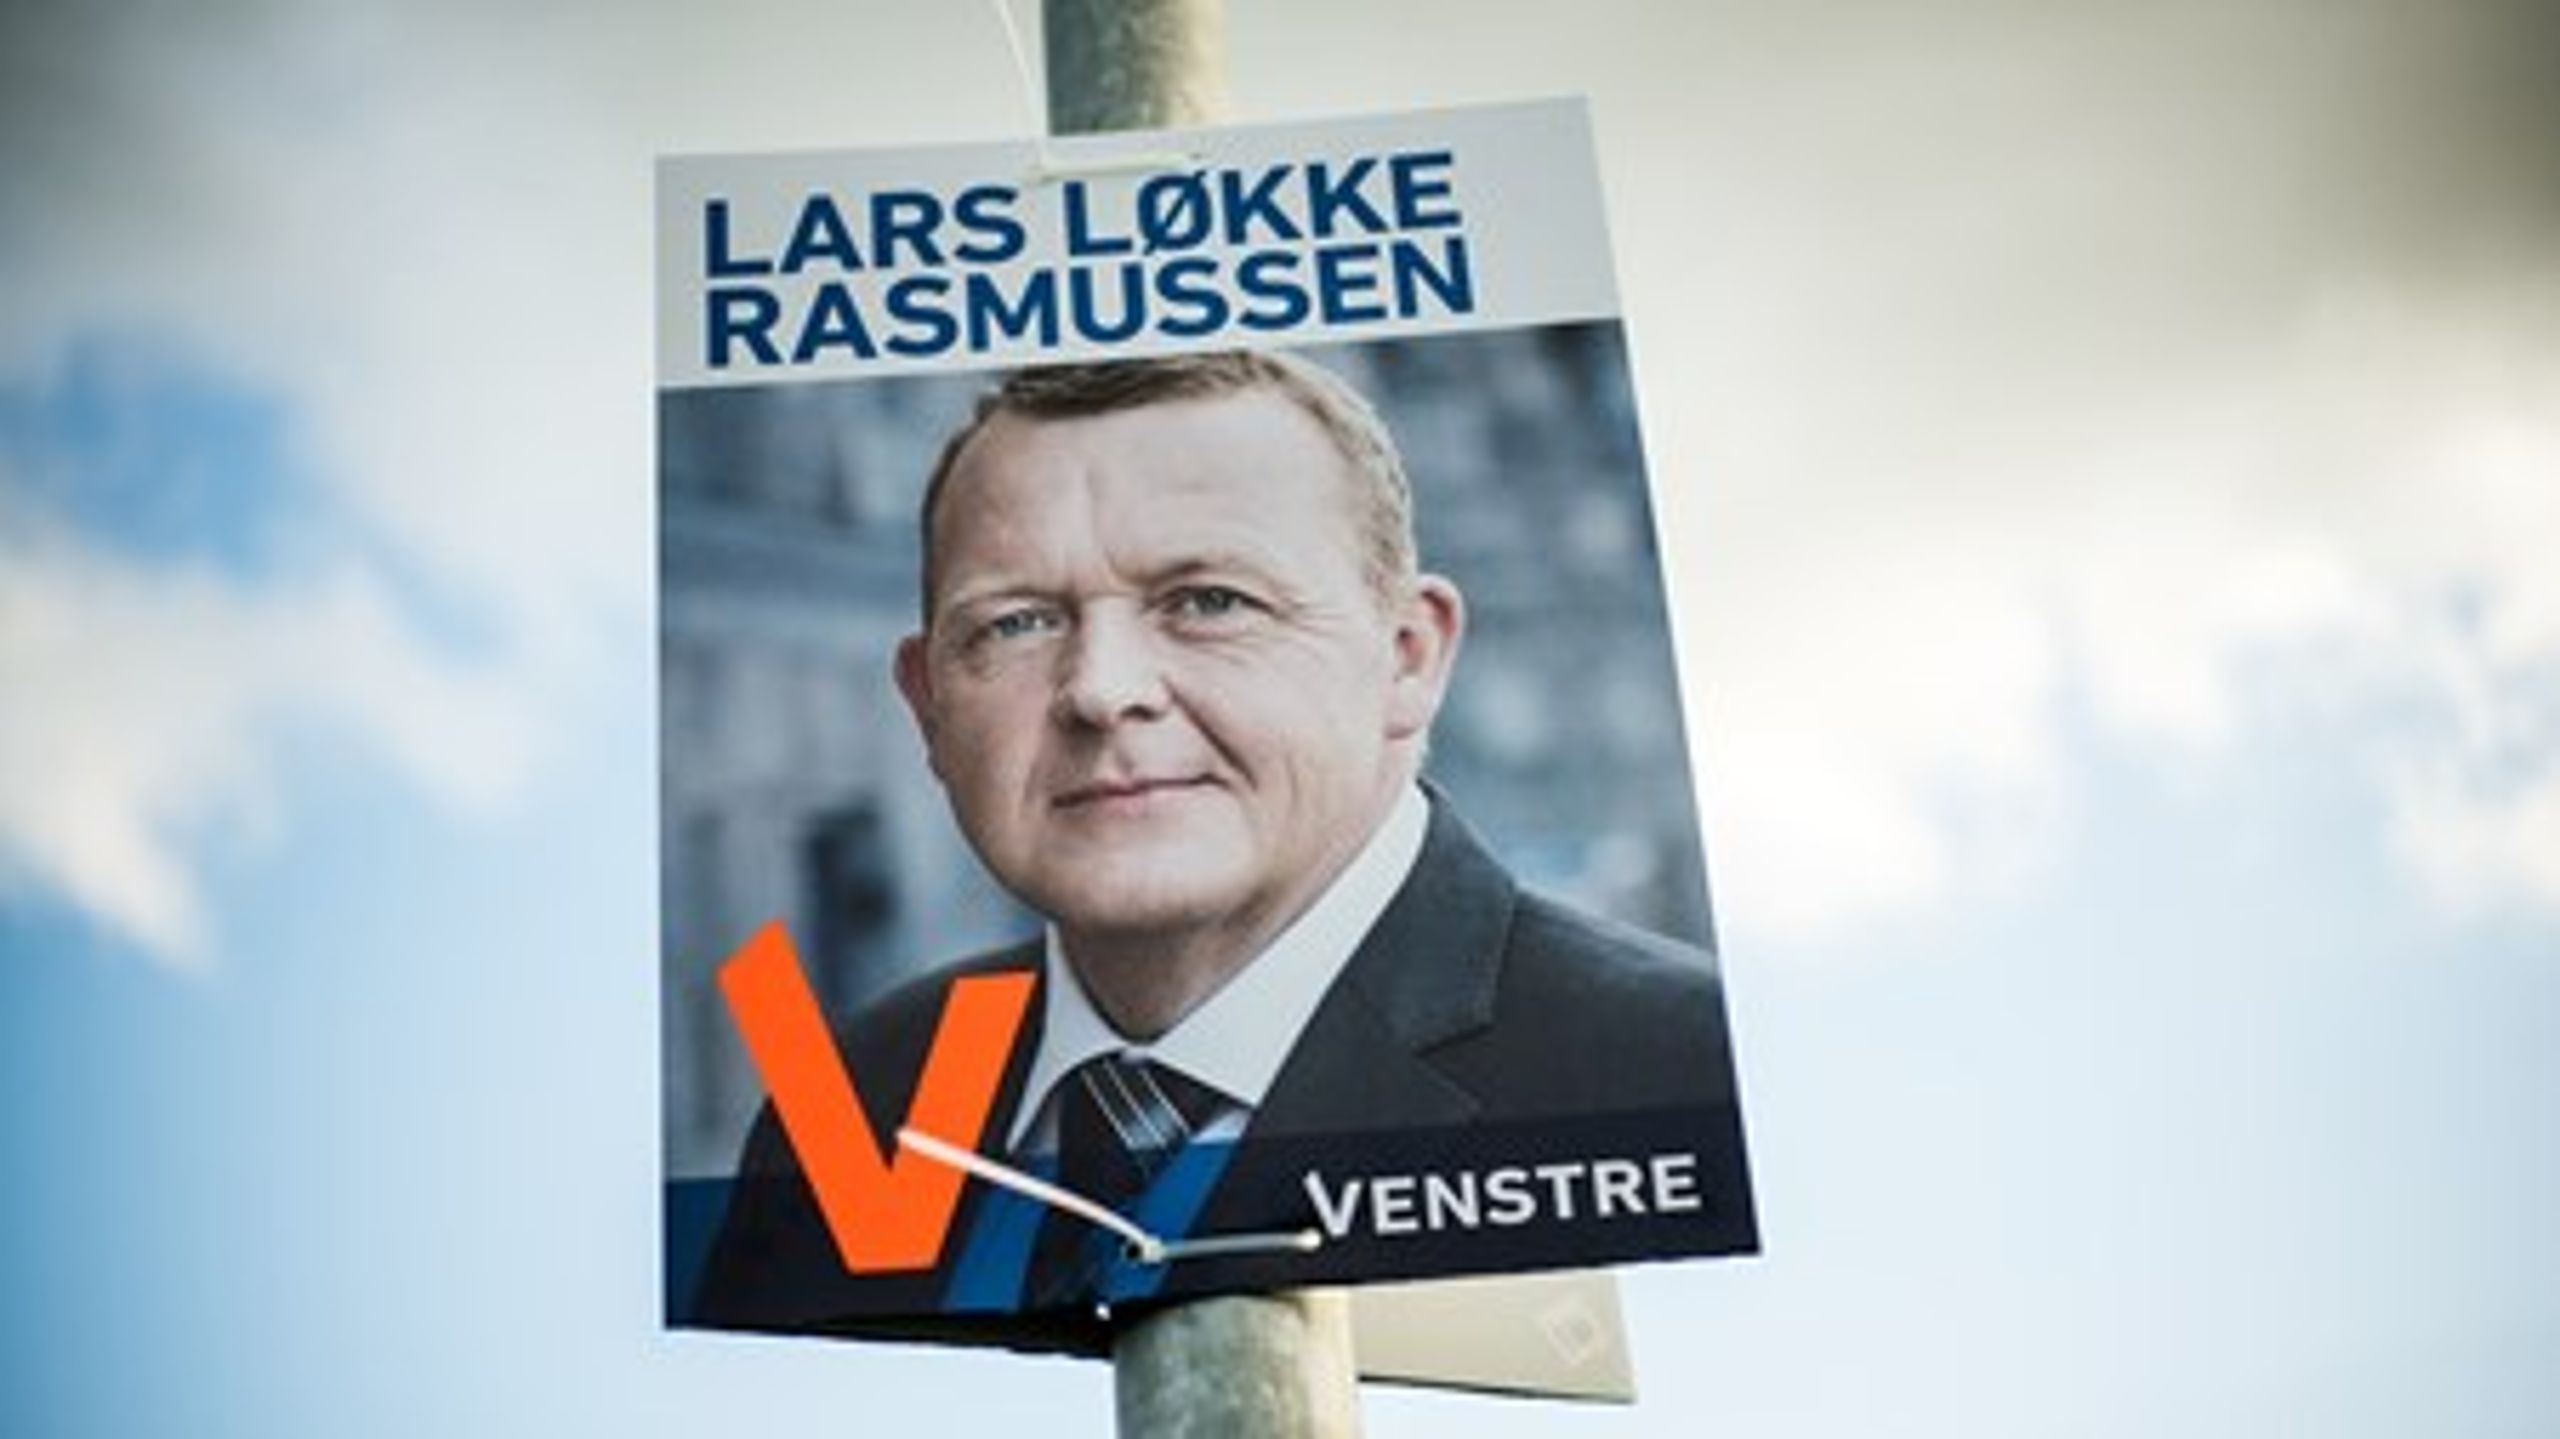 Bliver Lars Løkke Rasmussen Danmarks næste statsminister, vil han tage et opgør med EU-borgeres ret til danske velfærdsydelser